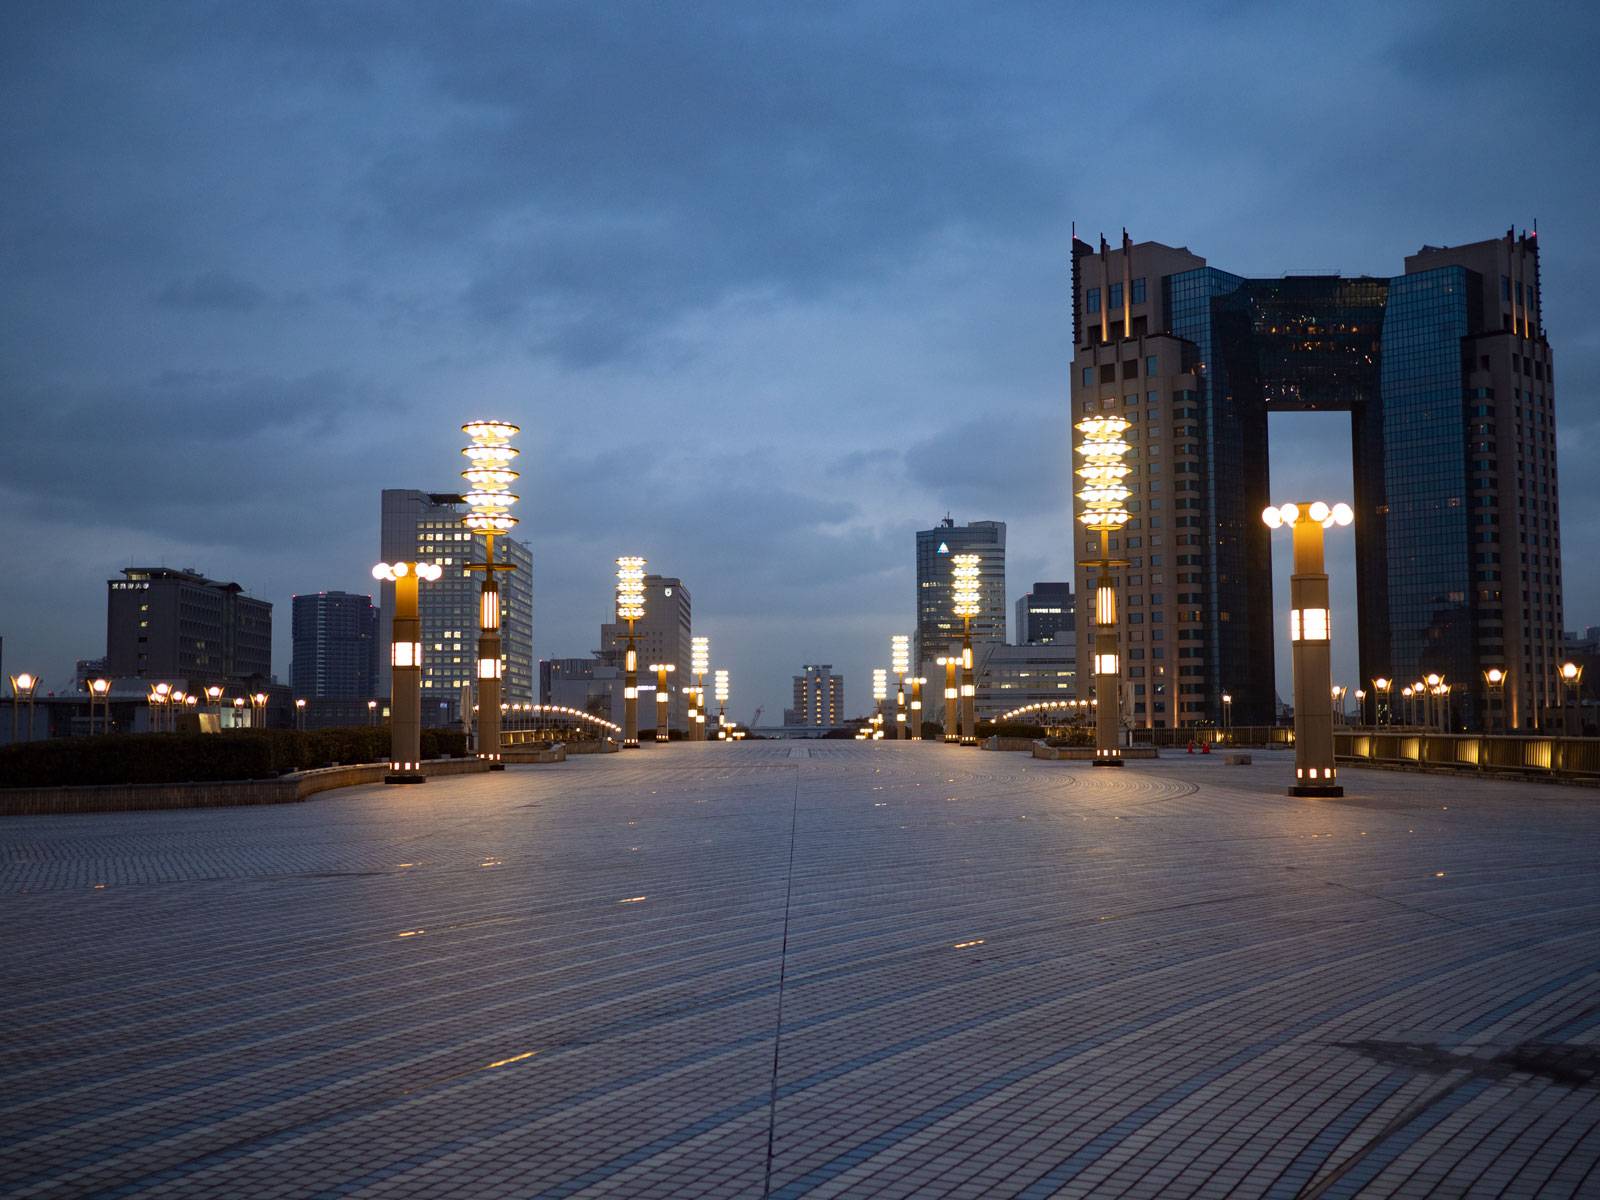 Odaiba buildings at night